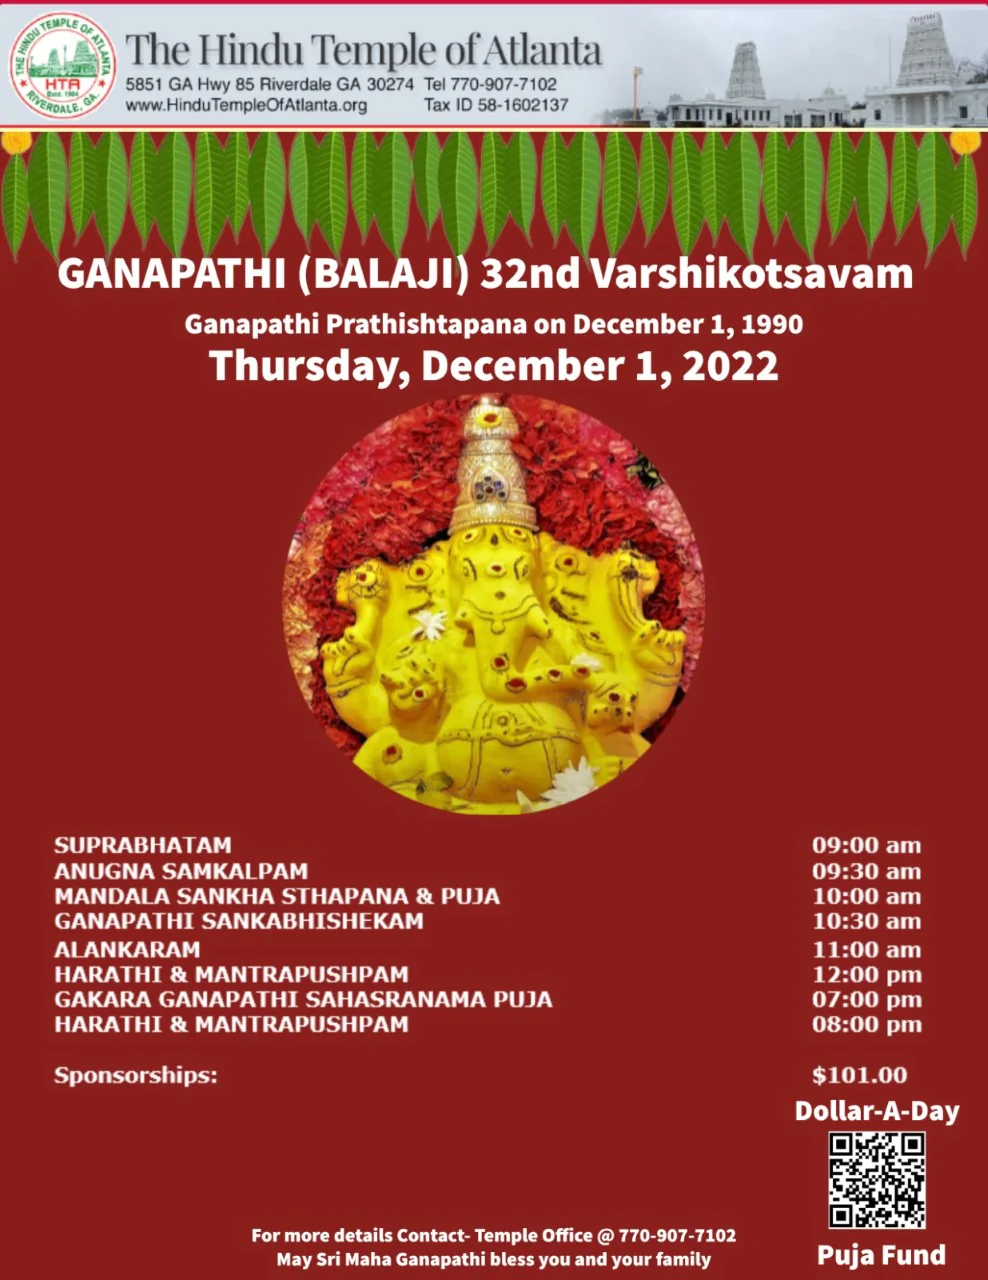 Ganapathi (Balaji) 32nd Varshikotsavam